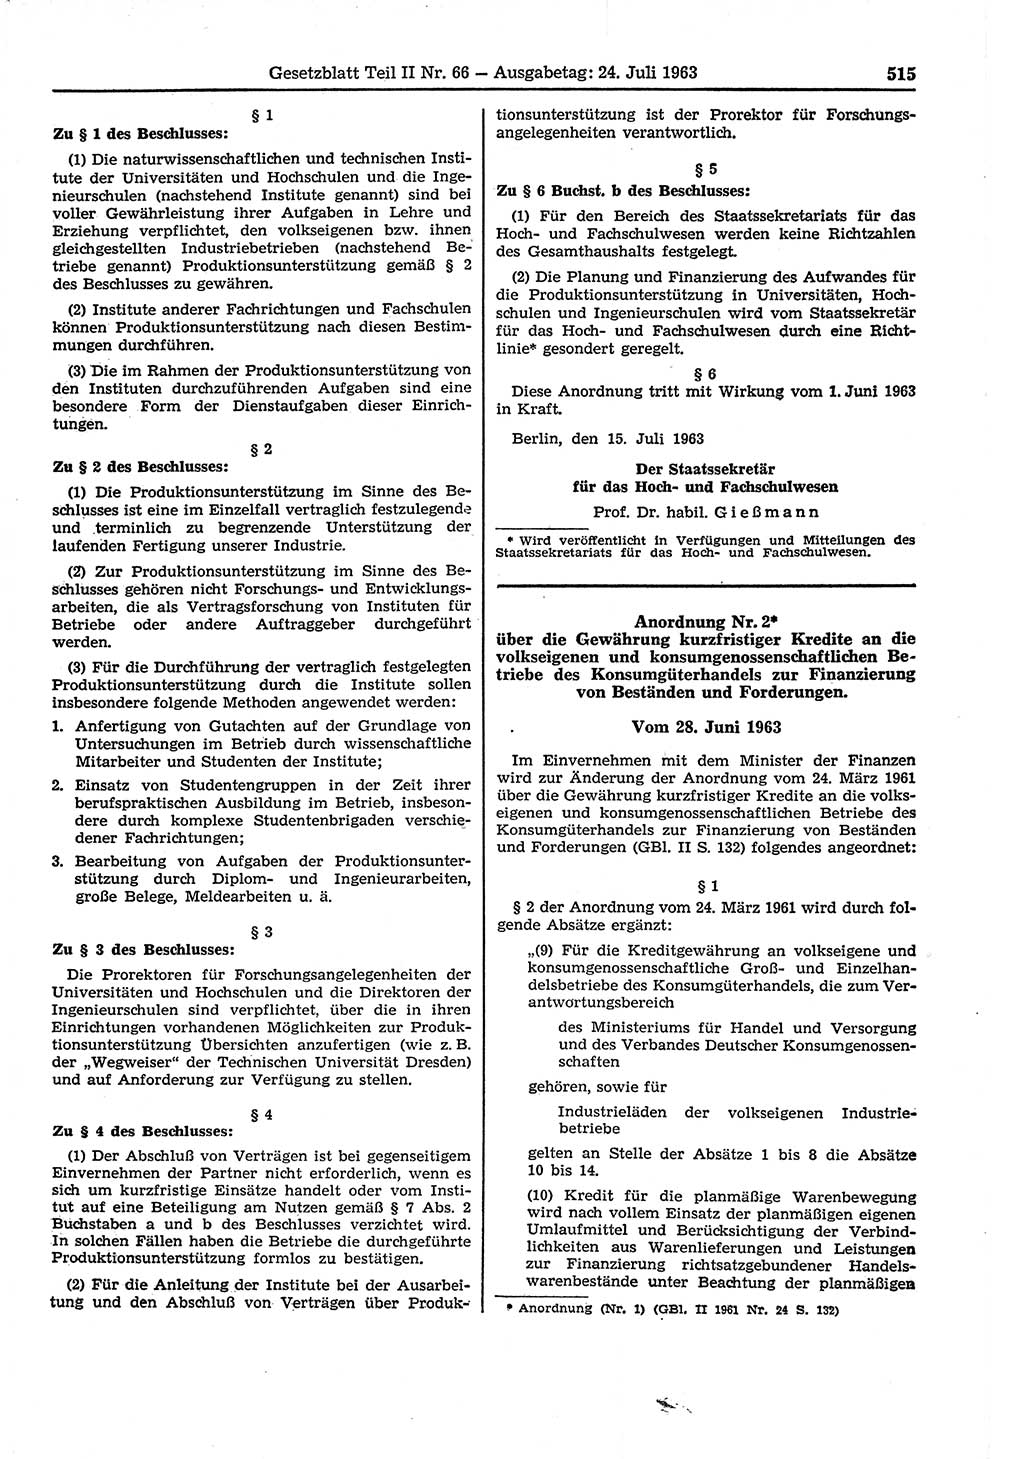 Gesetzblatt (GBl.) der Deutschen Demokratischen Republik (DDR) Teil ⅠⅠ 1963, Seite 515 (GBl. DDR ⅠⅠ 1963, S. 515)